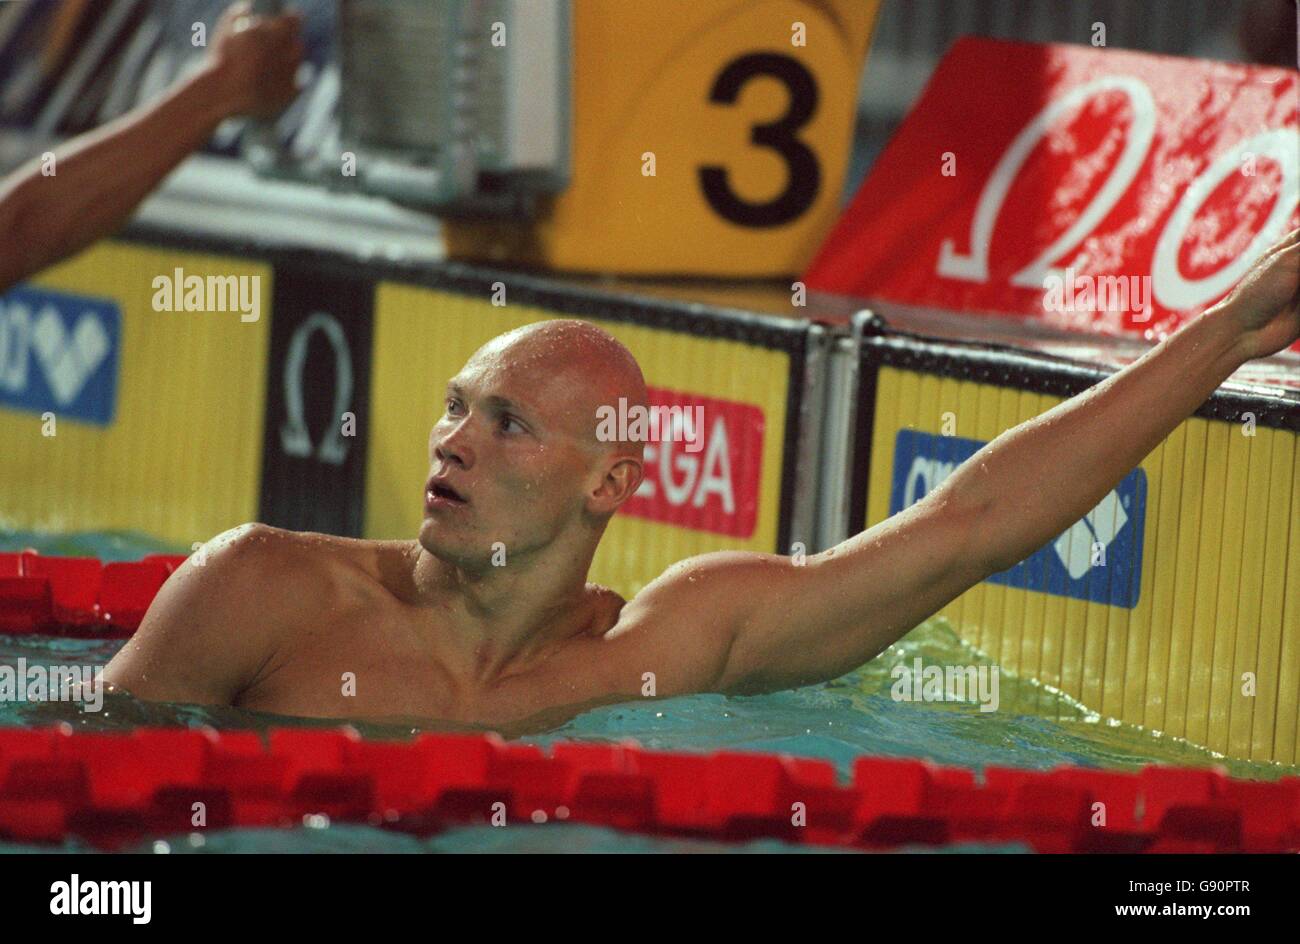 Nuoto - Campionati del mondo - Perth, Australia - 4x100m Medley Relay, uomini. Michael Klim, Australia Foto Stock